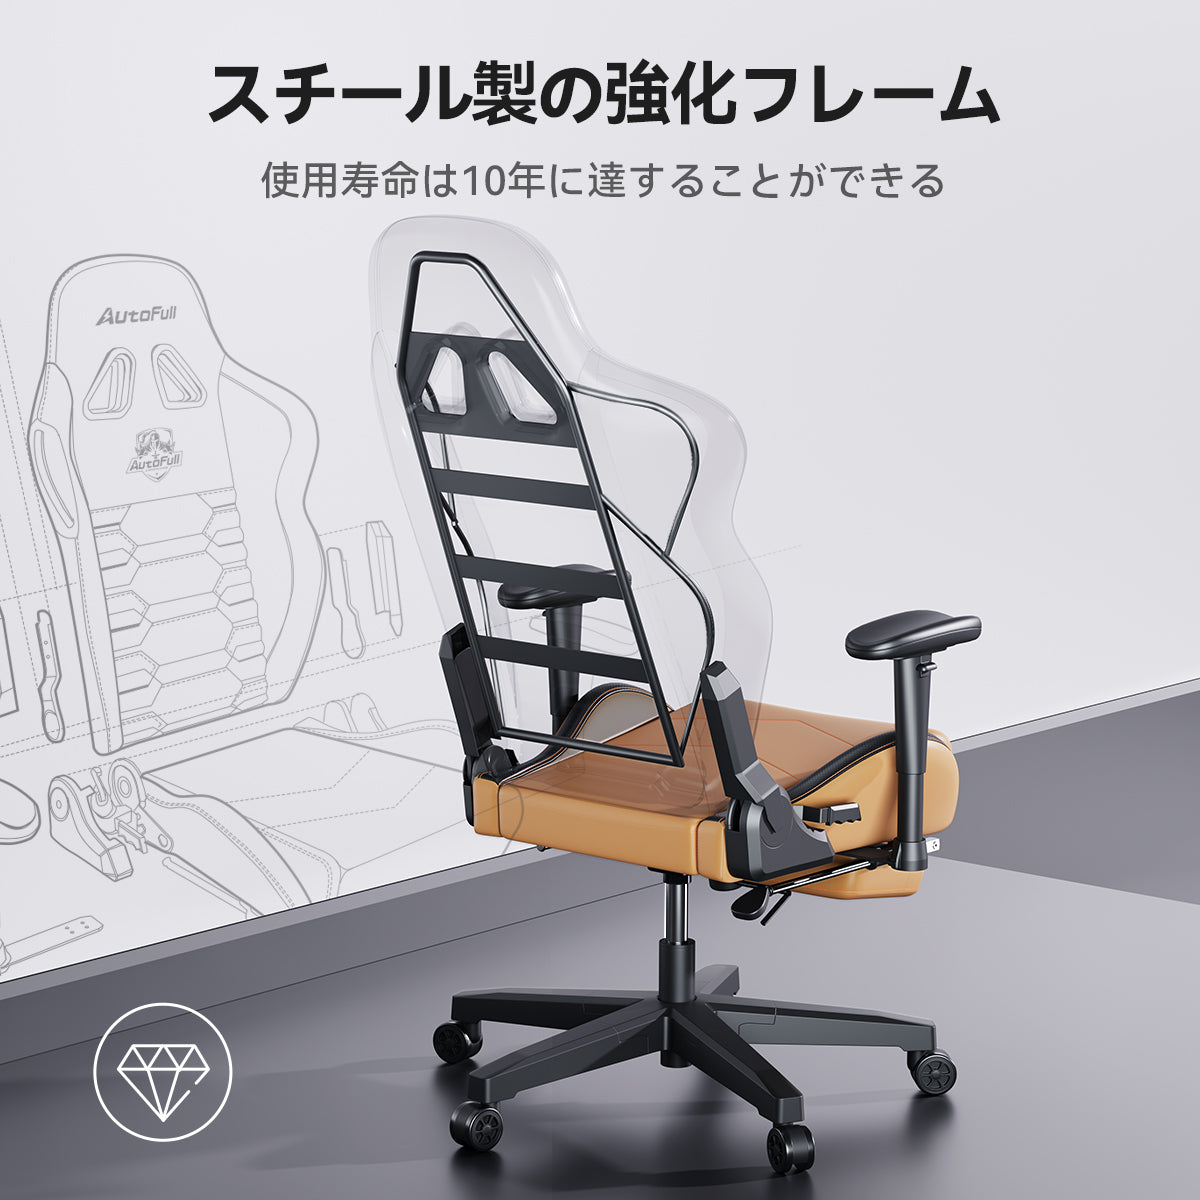 【色: 幻霊】AutoFull(オートフル) C3 ゲーミングチェア オフィスチオフィス家具